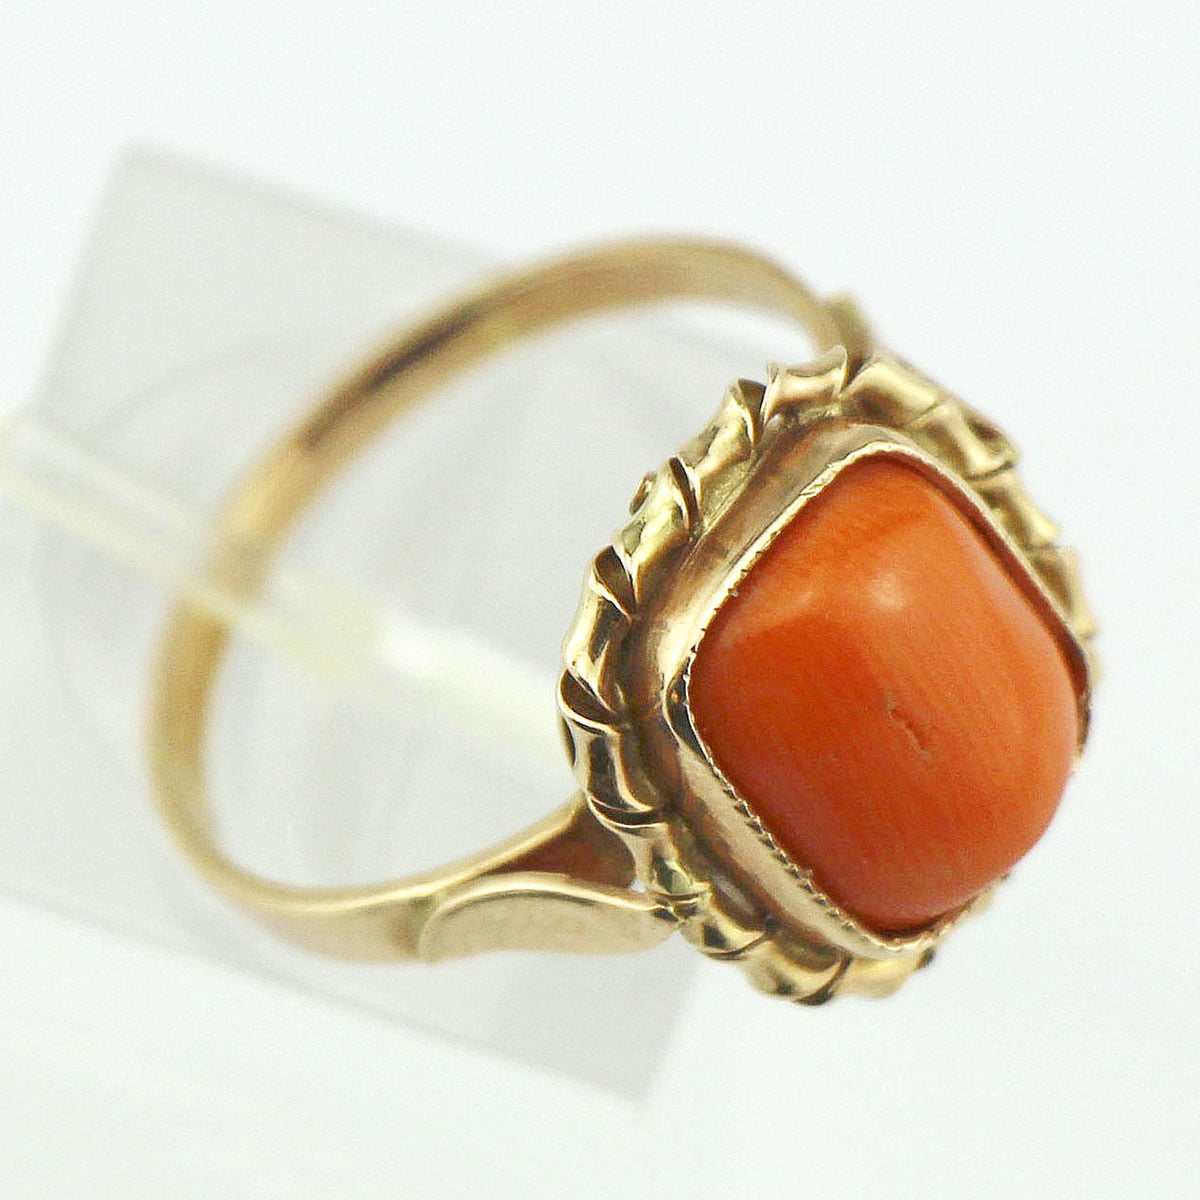 Комплект золотое кольцо+серьги с натуральным рыжим кораллом